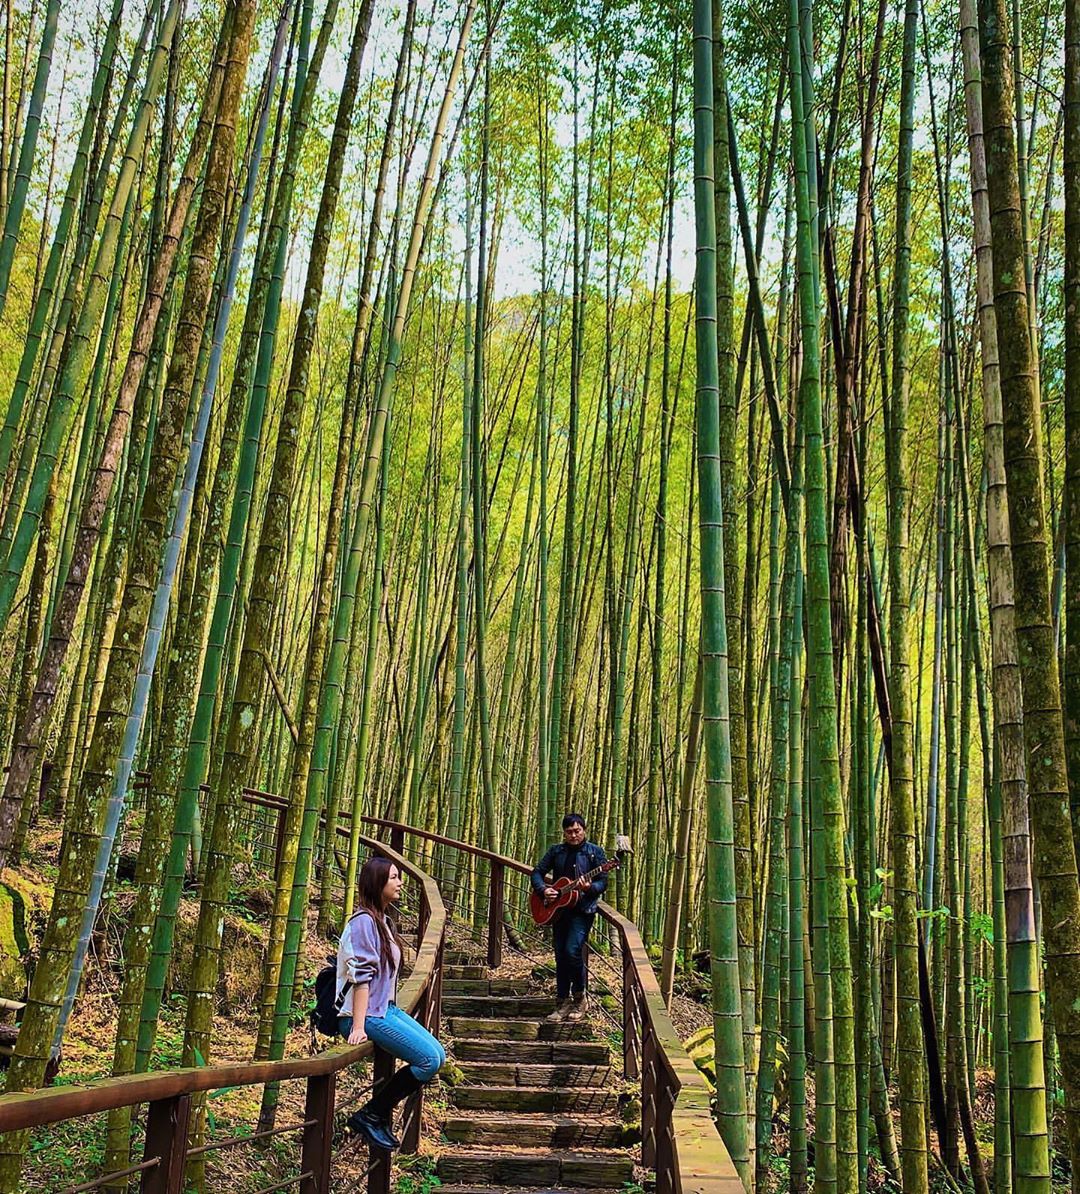 竹林的高聳令人身心遼闊在這片翠綠下的你們特別迷人-⠀⠀⠀⠀⠀⠀⠀⠀⠀⠀⠀感謝 @rosycloudband 分享的美照-⠀⠀⠀⠀⠀...